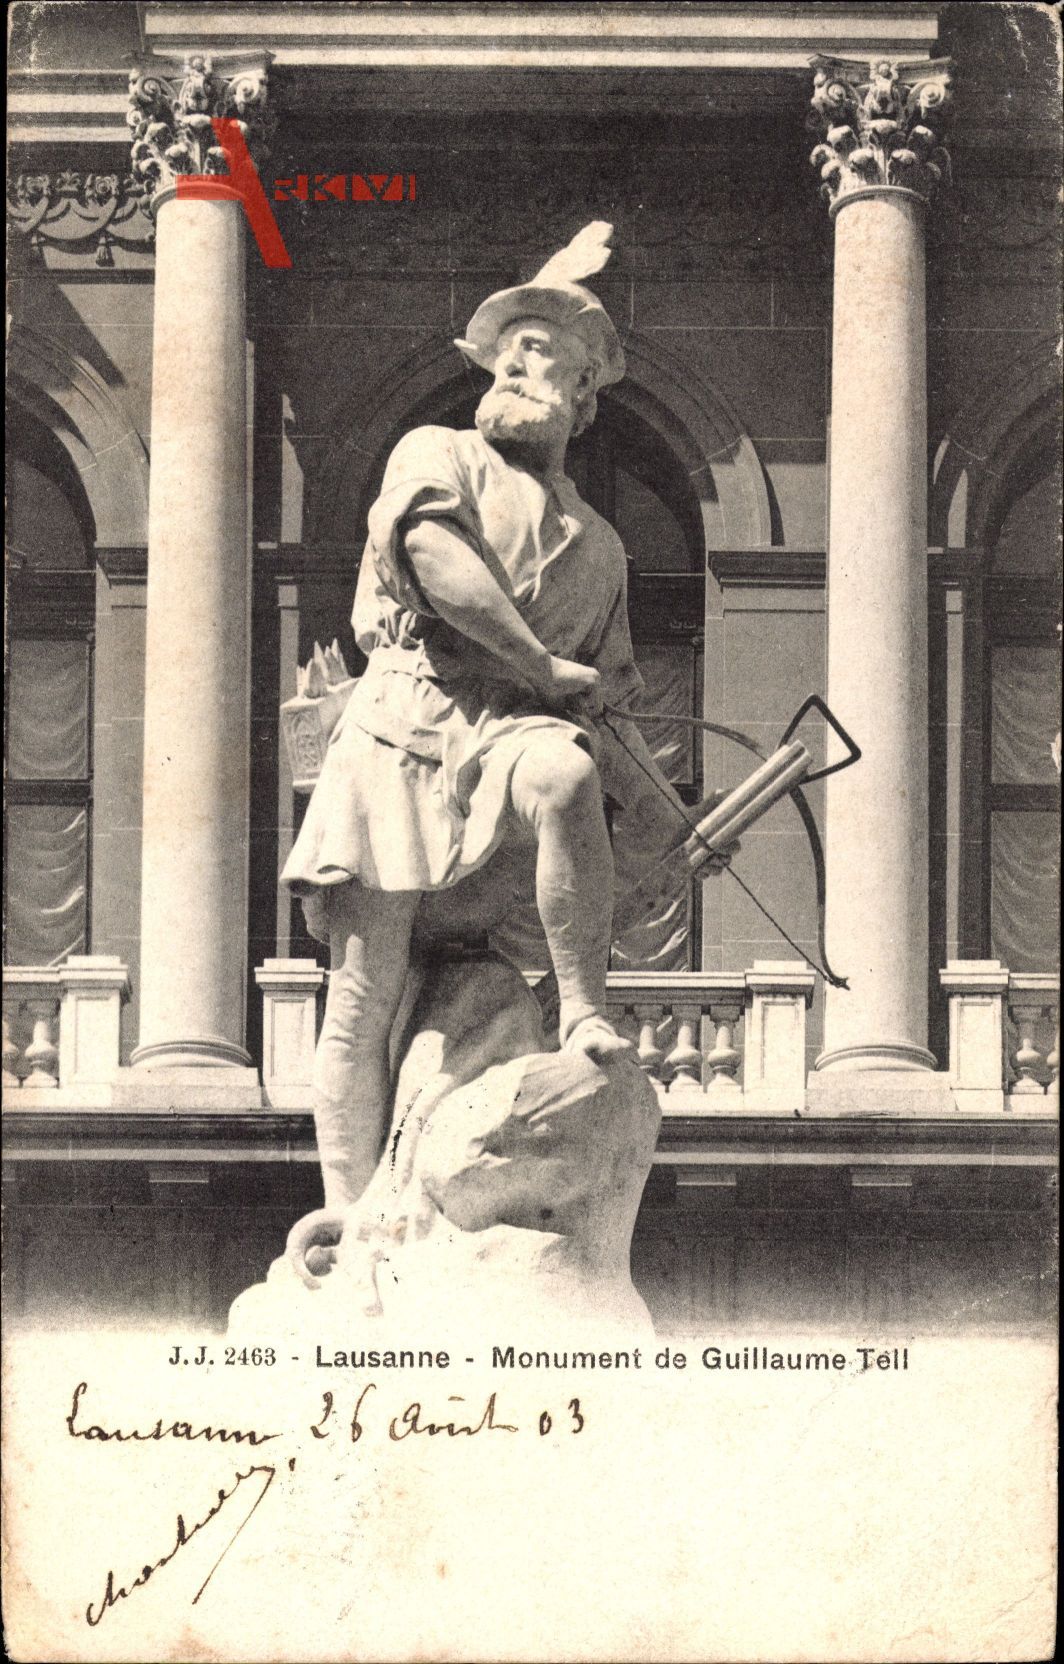 Lausanne Kt. Waadt Schweiz, Monument de Guillaume Tell